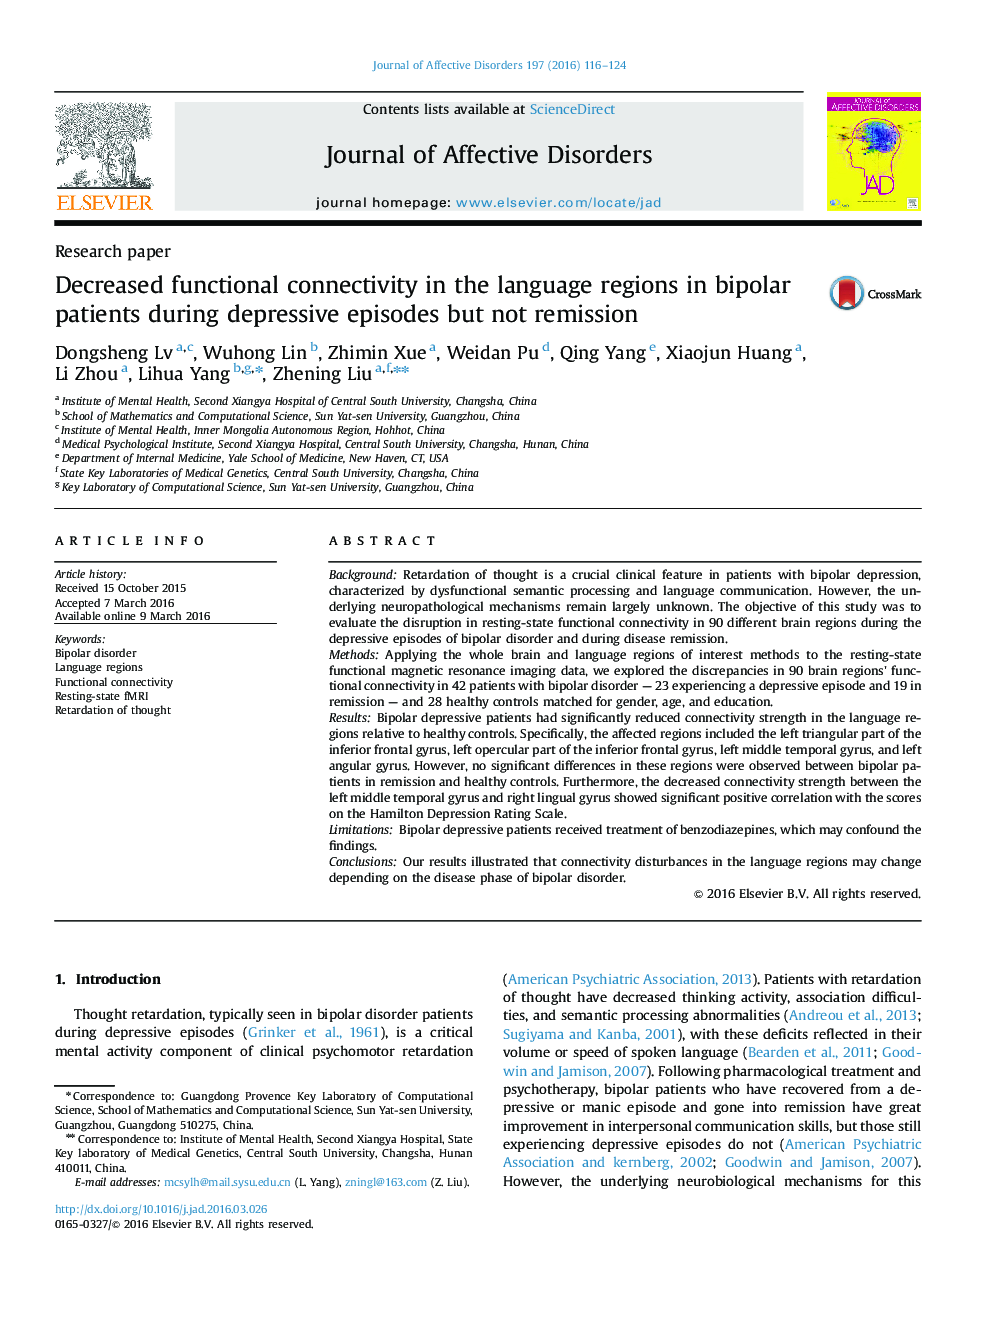 کاهش وابستگی عملکردی در مناطق زبان در بیماران دوقطبی در طی مراحل افسردگی، اما عدم بهبودی 